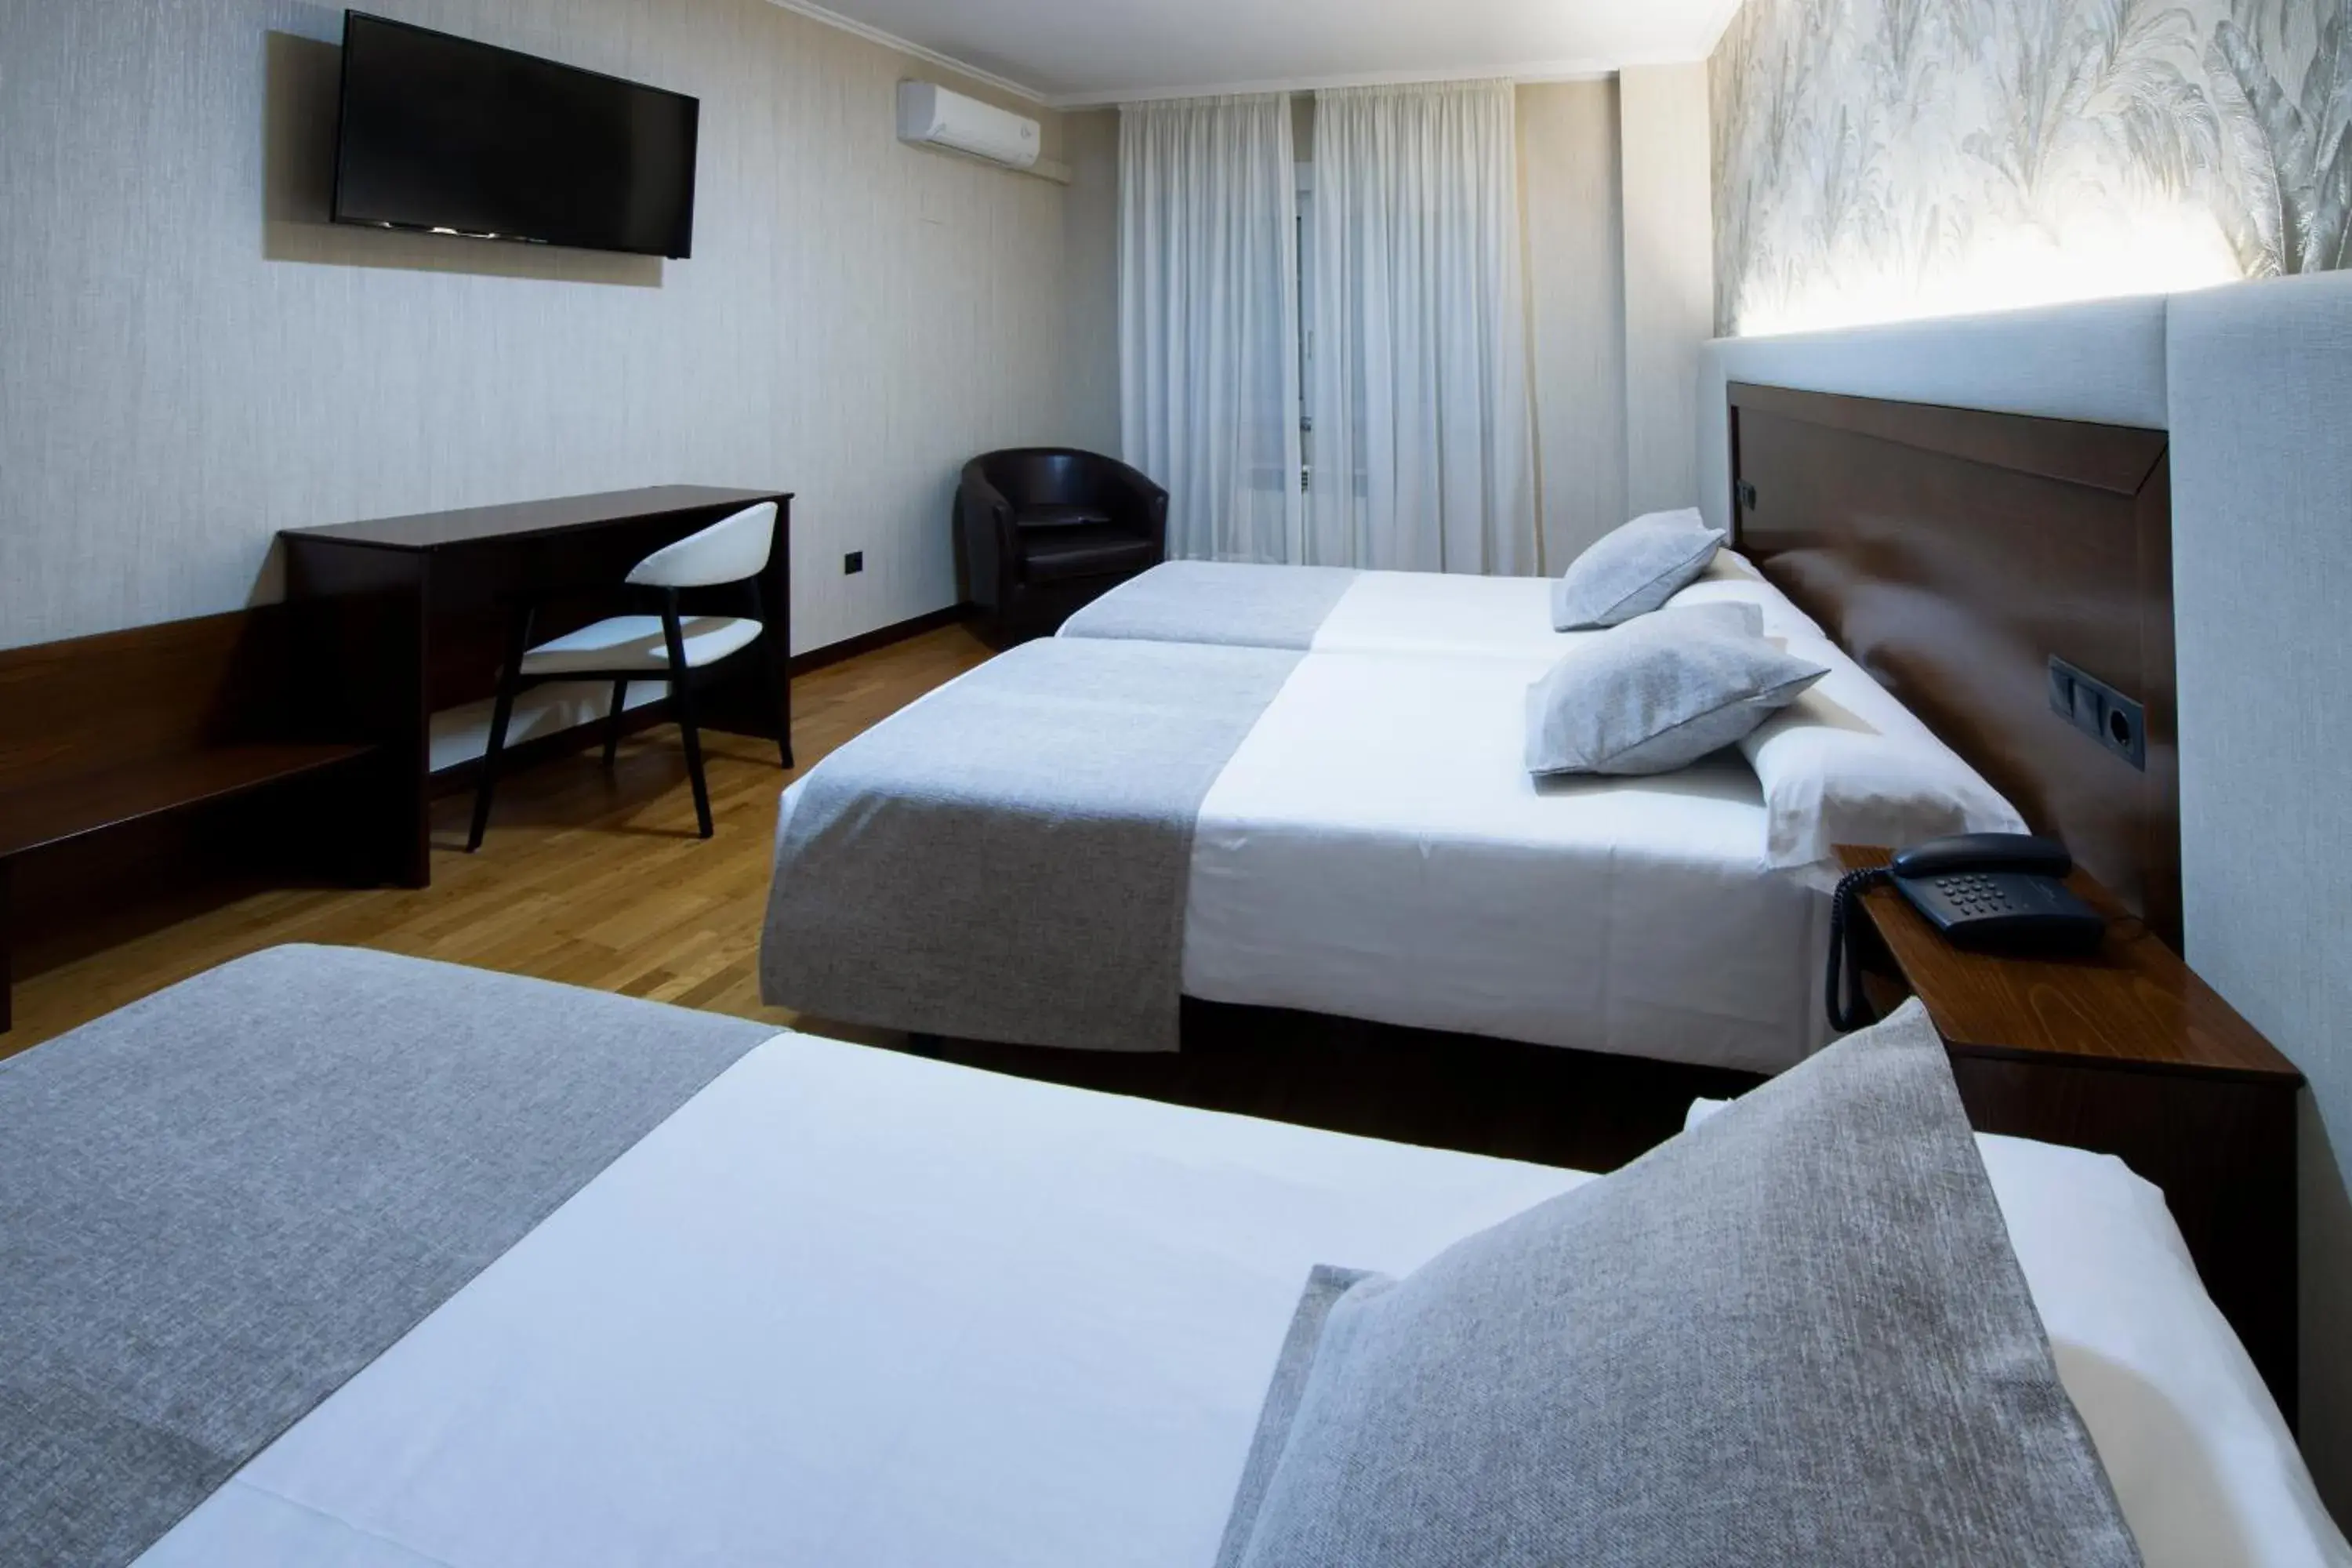 Triple Room in Hotel Oca Insua Costa da Morte